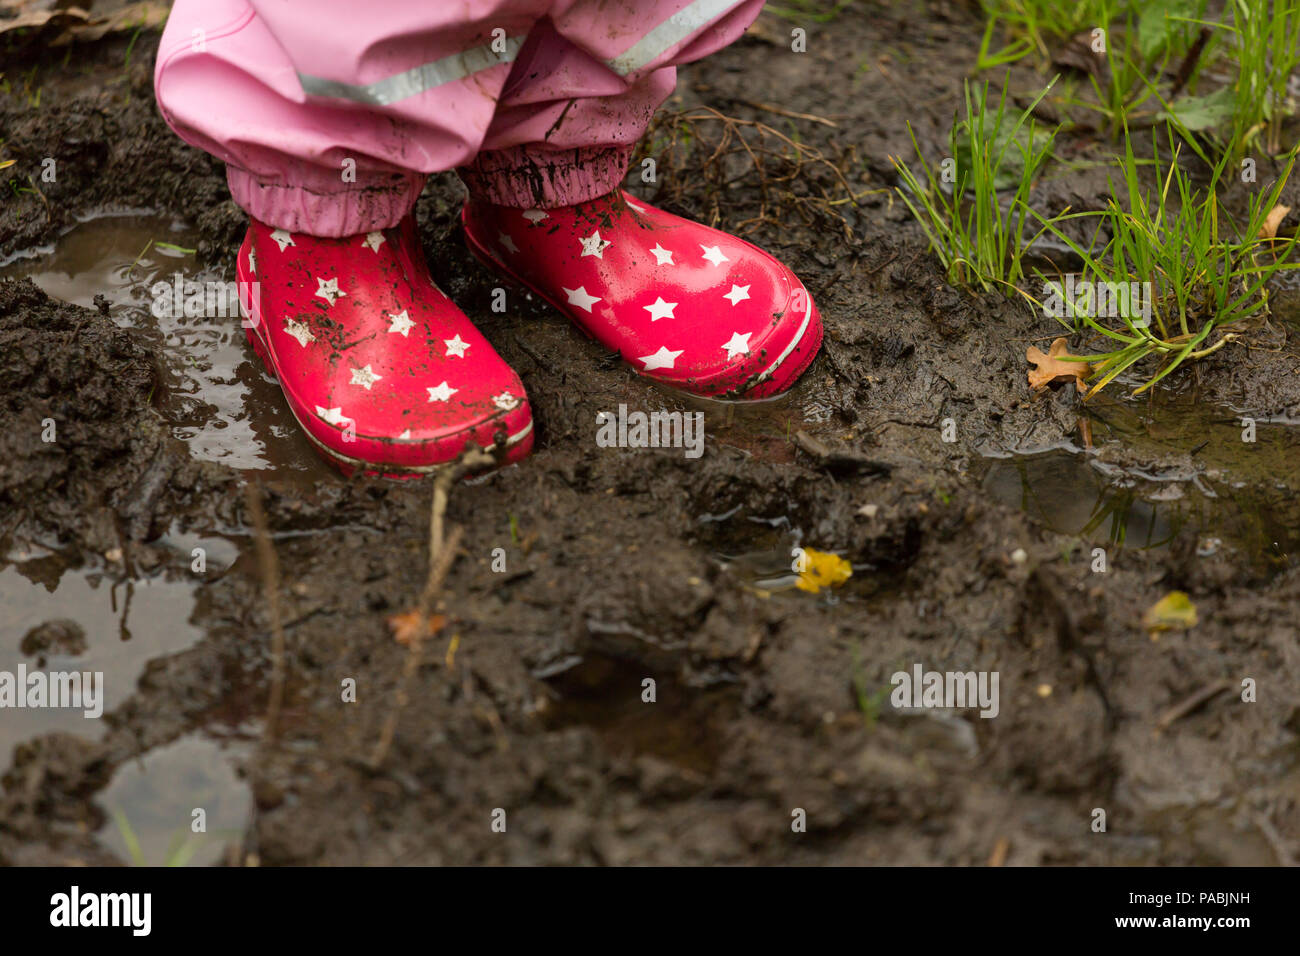 Una Mujer Joven Que Lleva Calcetines Rojos Y Botas De Invierno Están  Caminando En El Páramo En La Niebla Cerca De Algunas Vacas Fotos, retratos,  imágenes y fotografía de archivo libres de